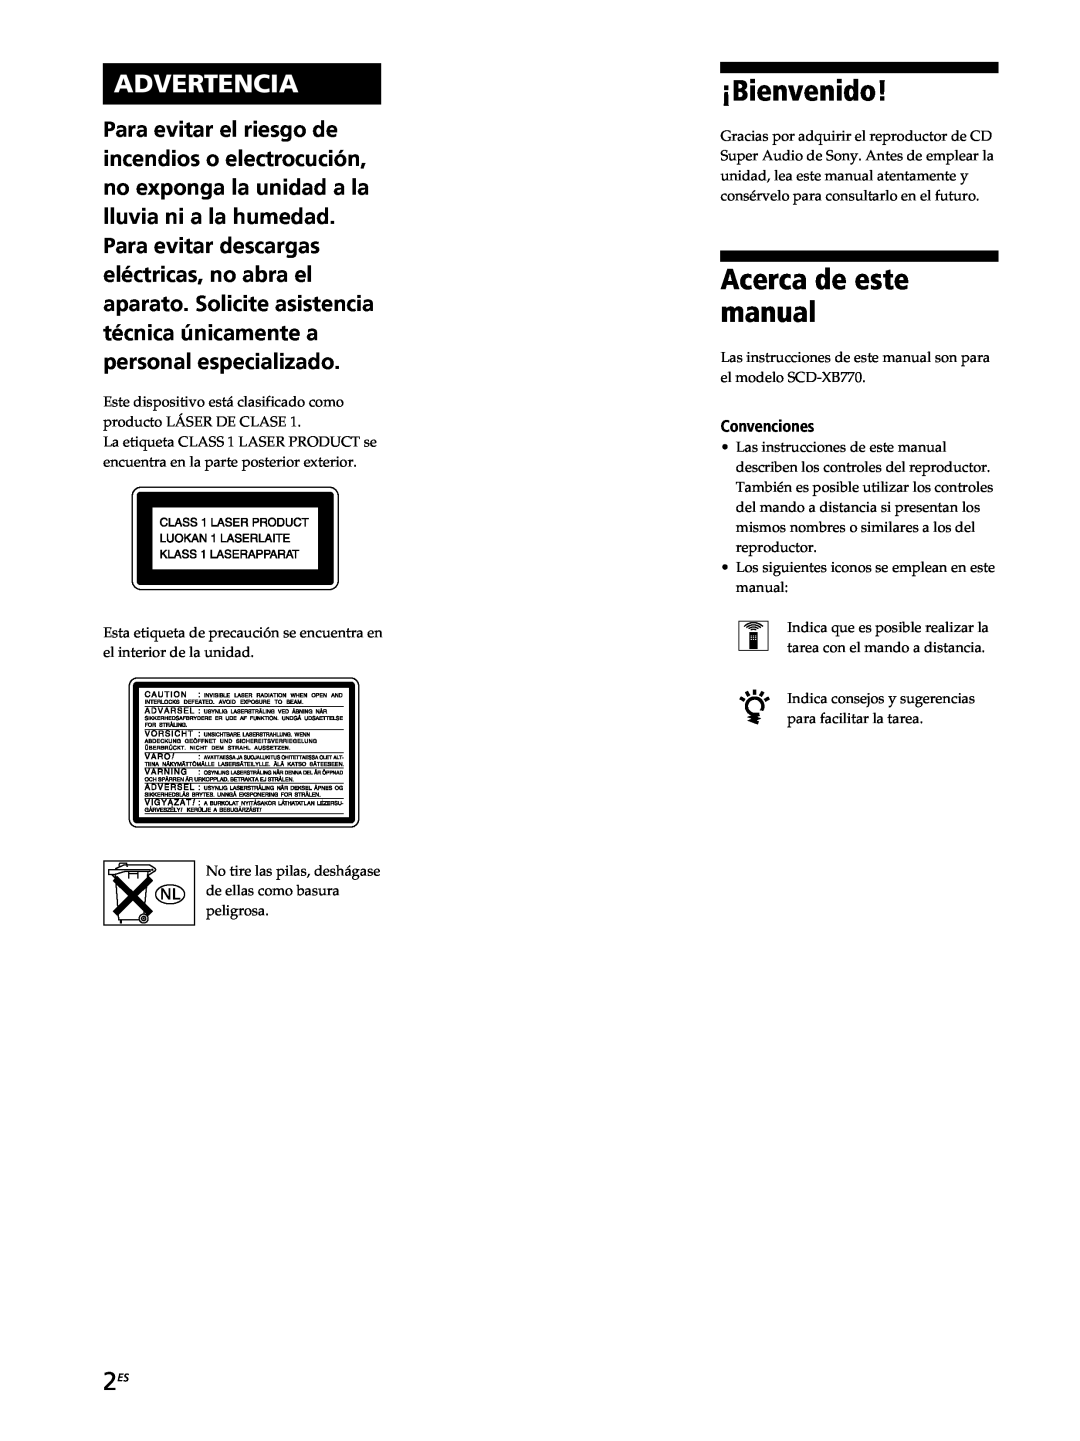 Sony SCD-XB770 operating instructions ¡Bienvenido, Acerca de este manual, Advertencia 